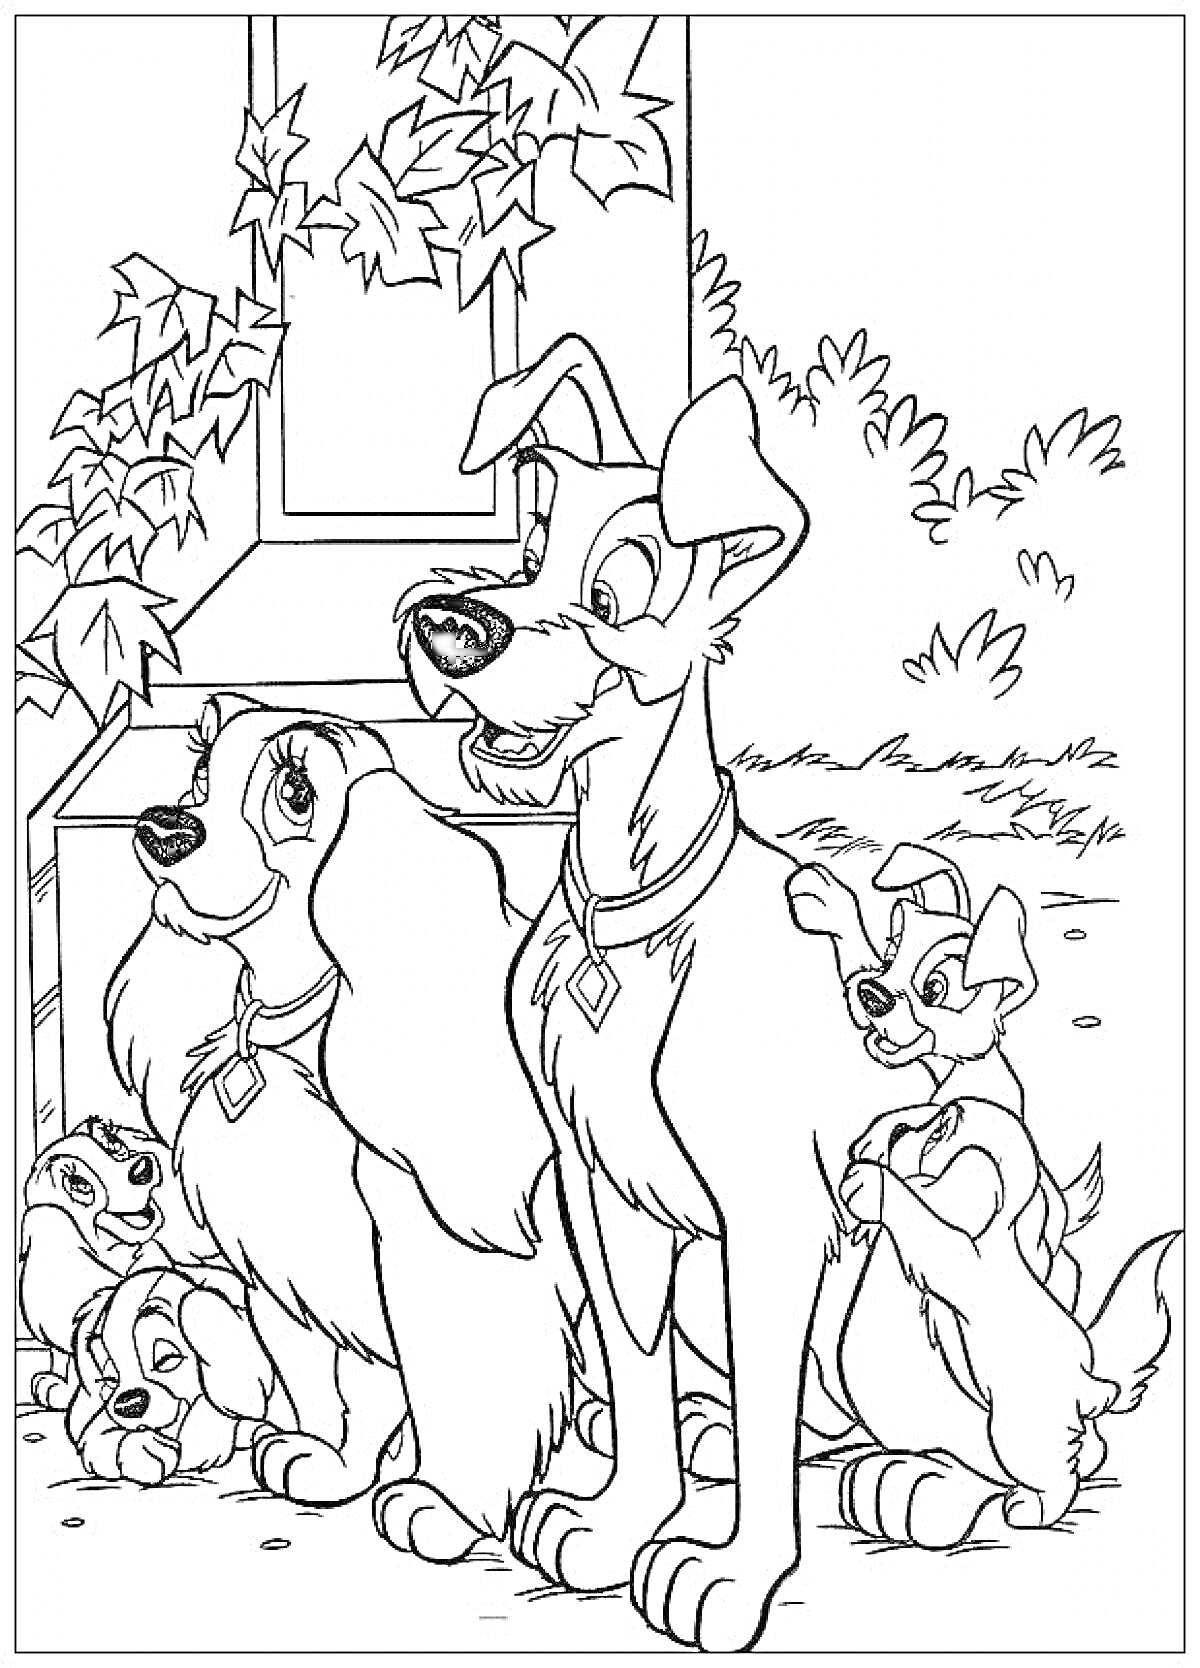 Леди и Бродяга перед домом с щенками и лианами на стене